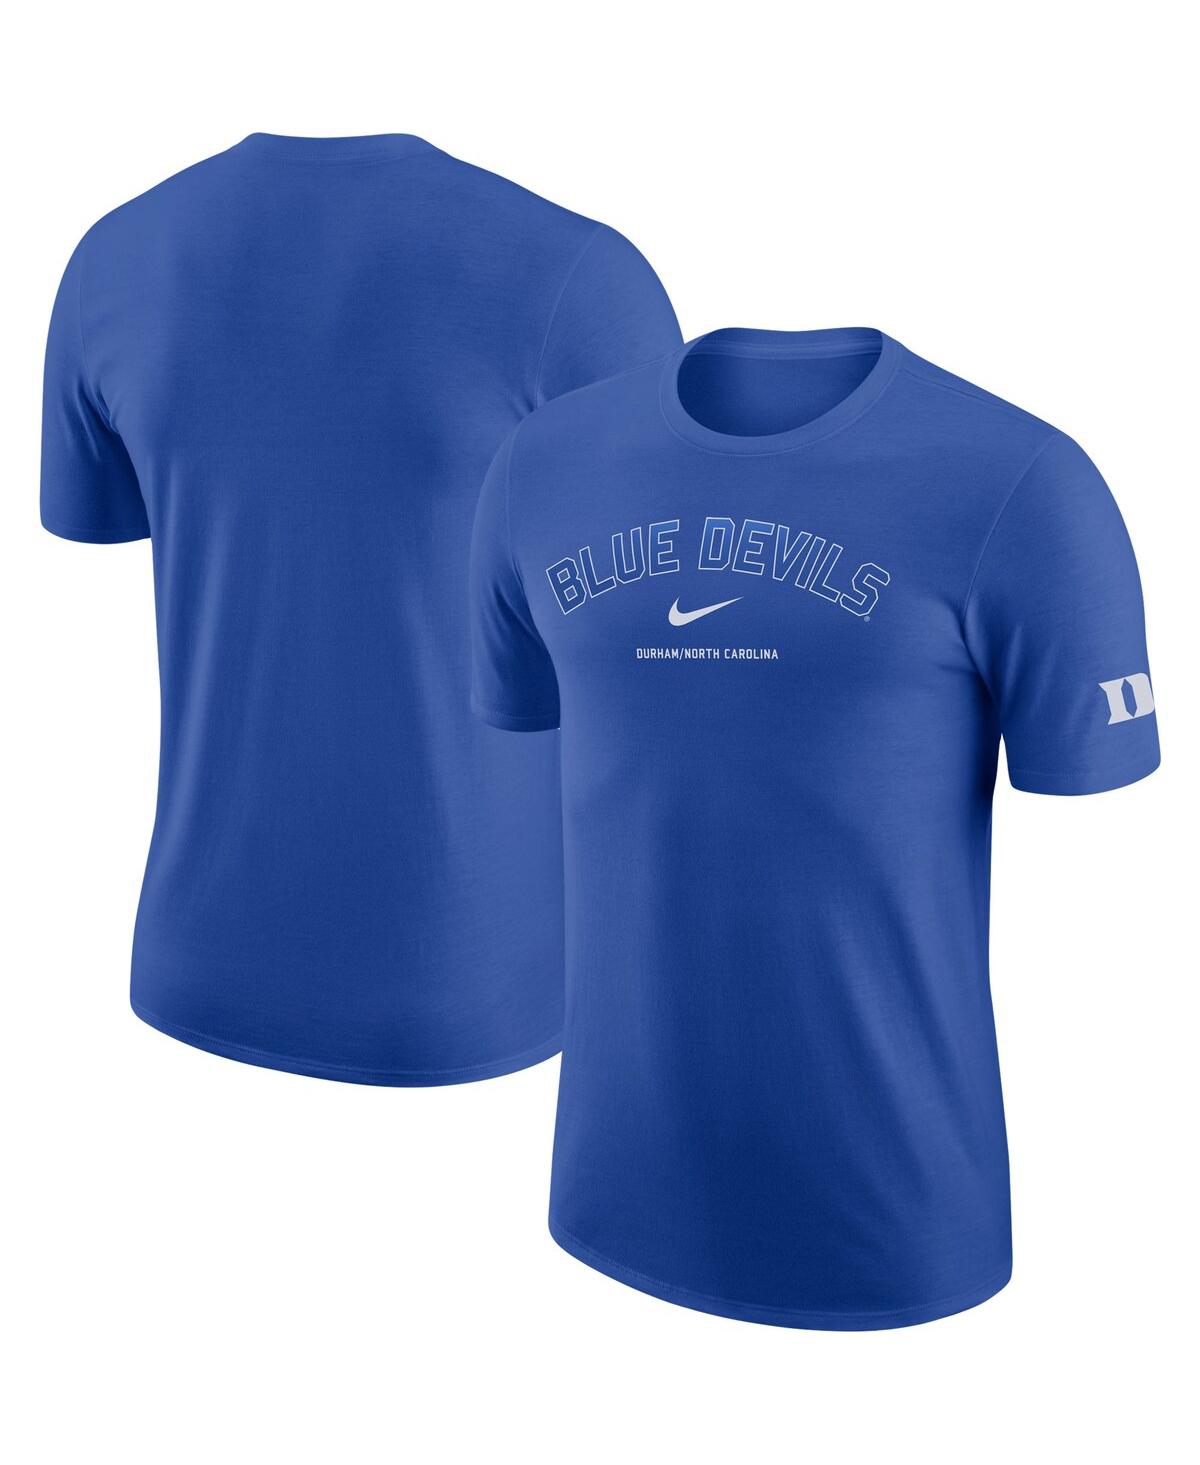 Men's Nike Royal Duke Blue Devils Dna Team Performance T-shirt